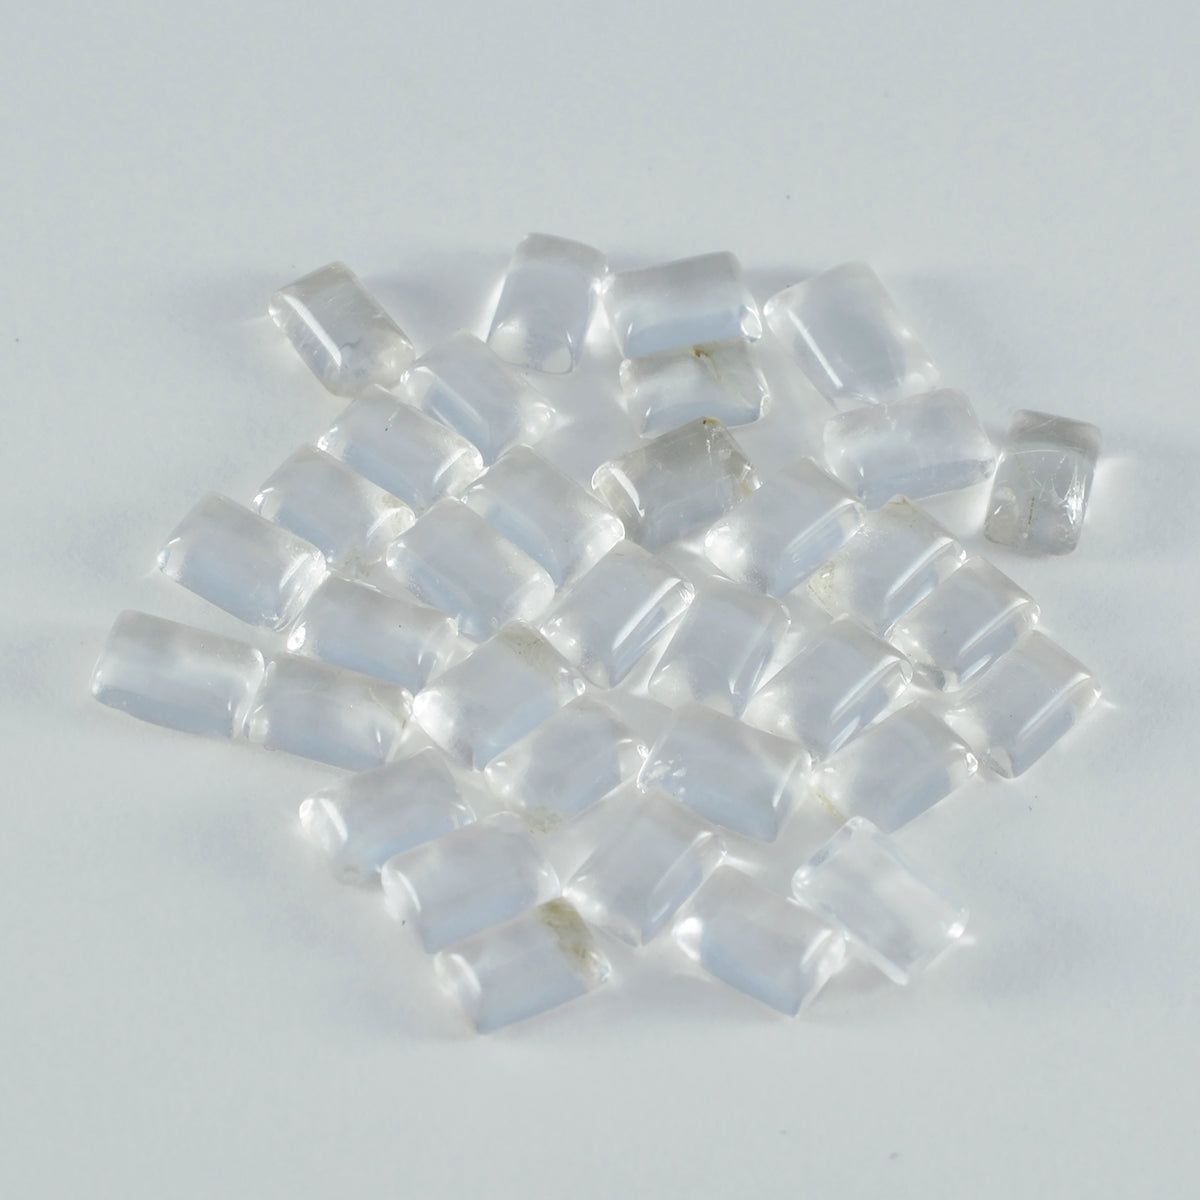 riyogems 1 шт., кабошон из белого кристалла кварца, 4x6 мм, восьмиугольная форма, отличное качество, драгоценный камень